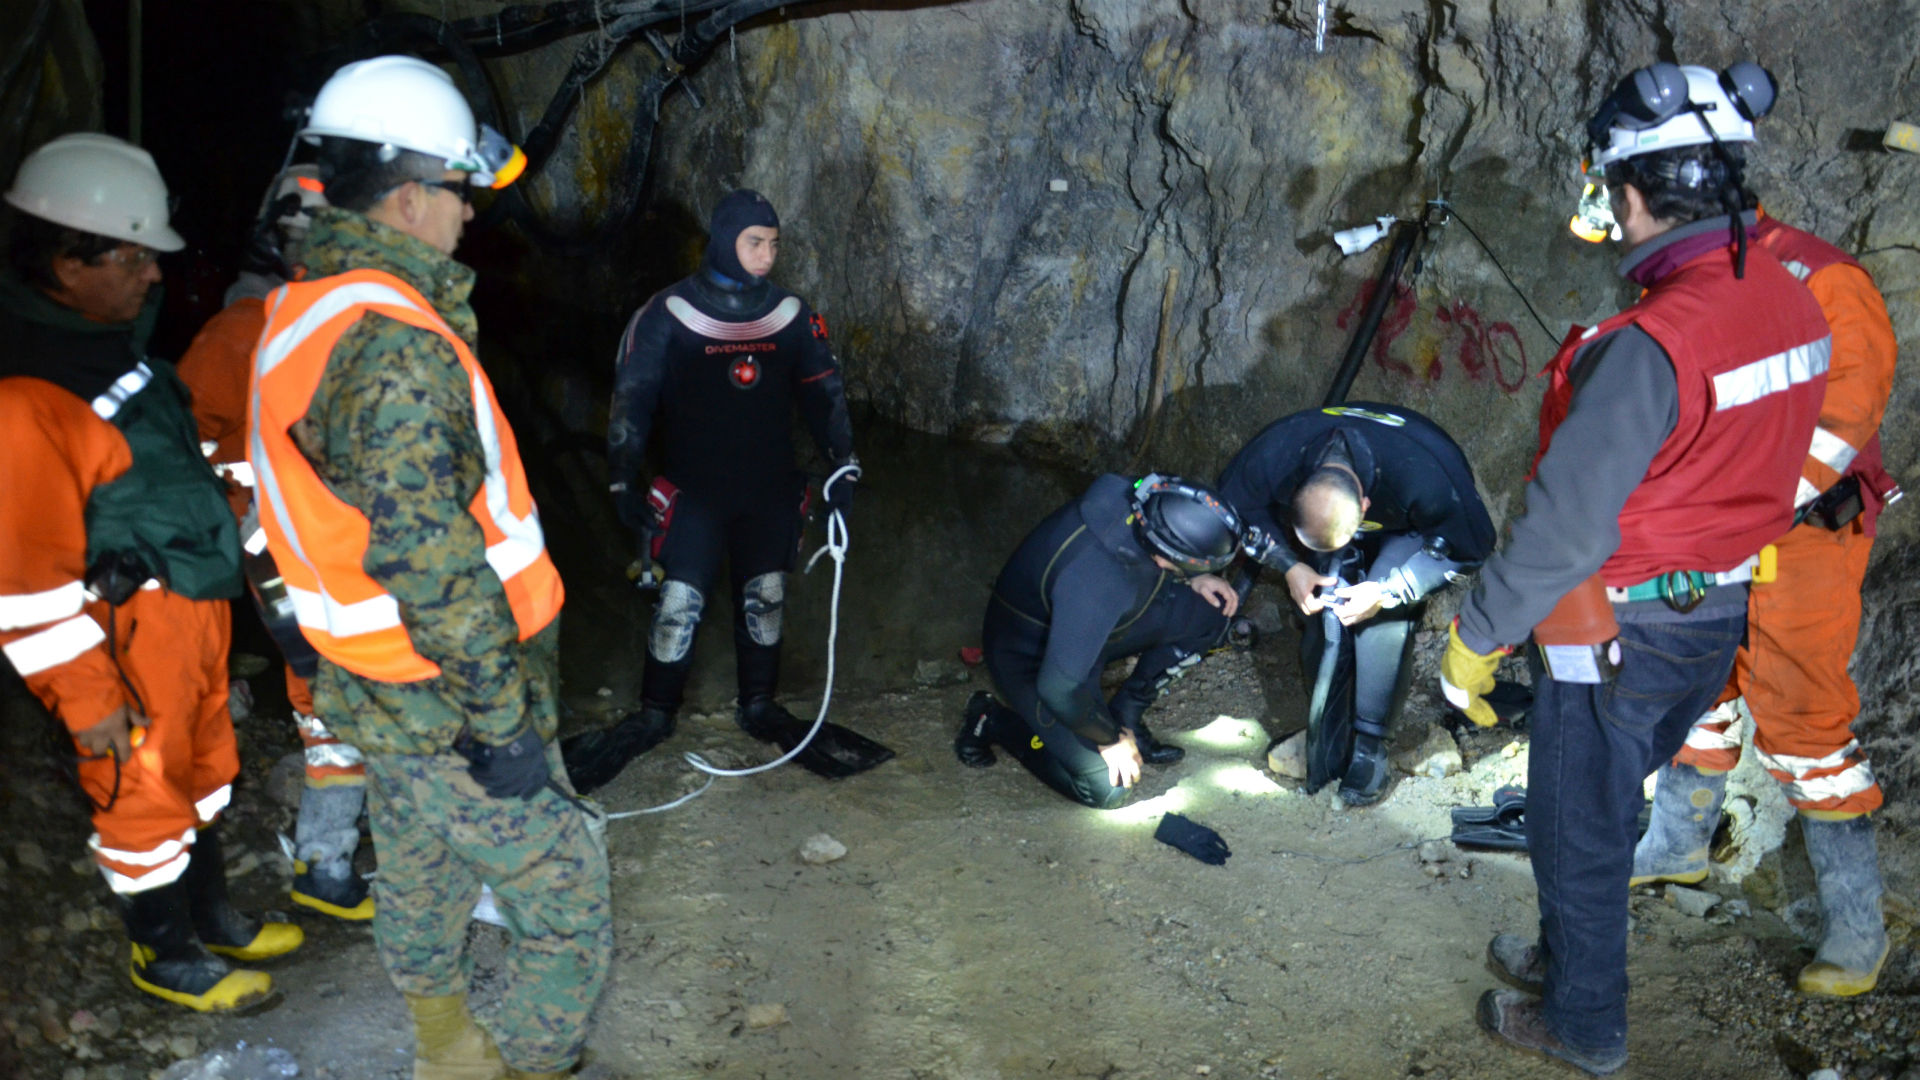 Dos mineros llevan más de 10 días atrapados en una mina inundada en Chile